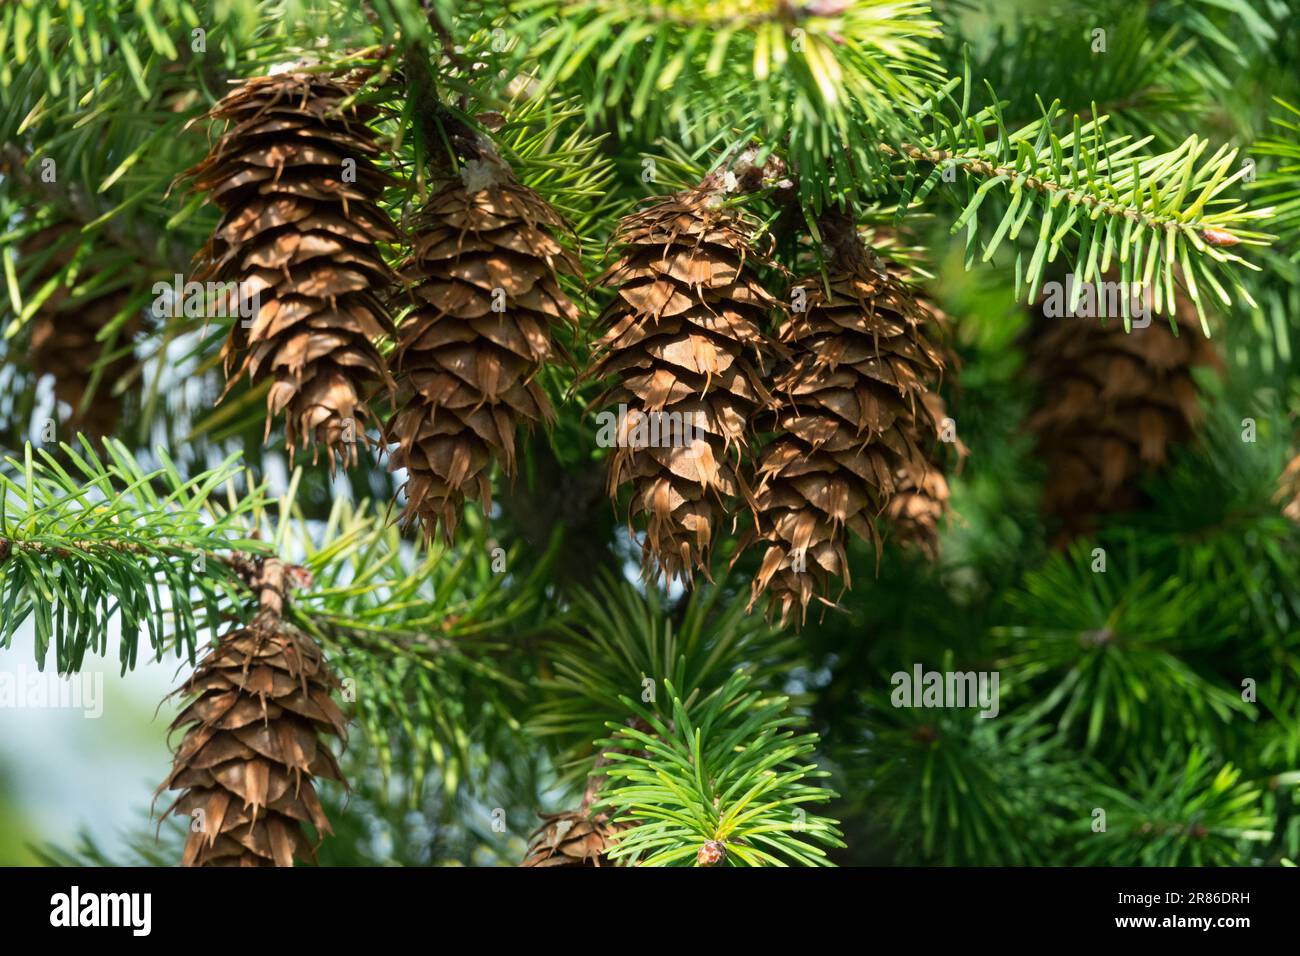 Pseudotsuga menziesii, Cones, Pseudotsuga menziesii 'Argentea' cones on branch Douglas Fir cones Stock Photo